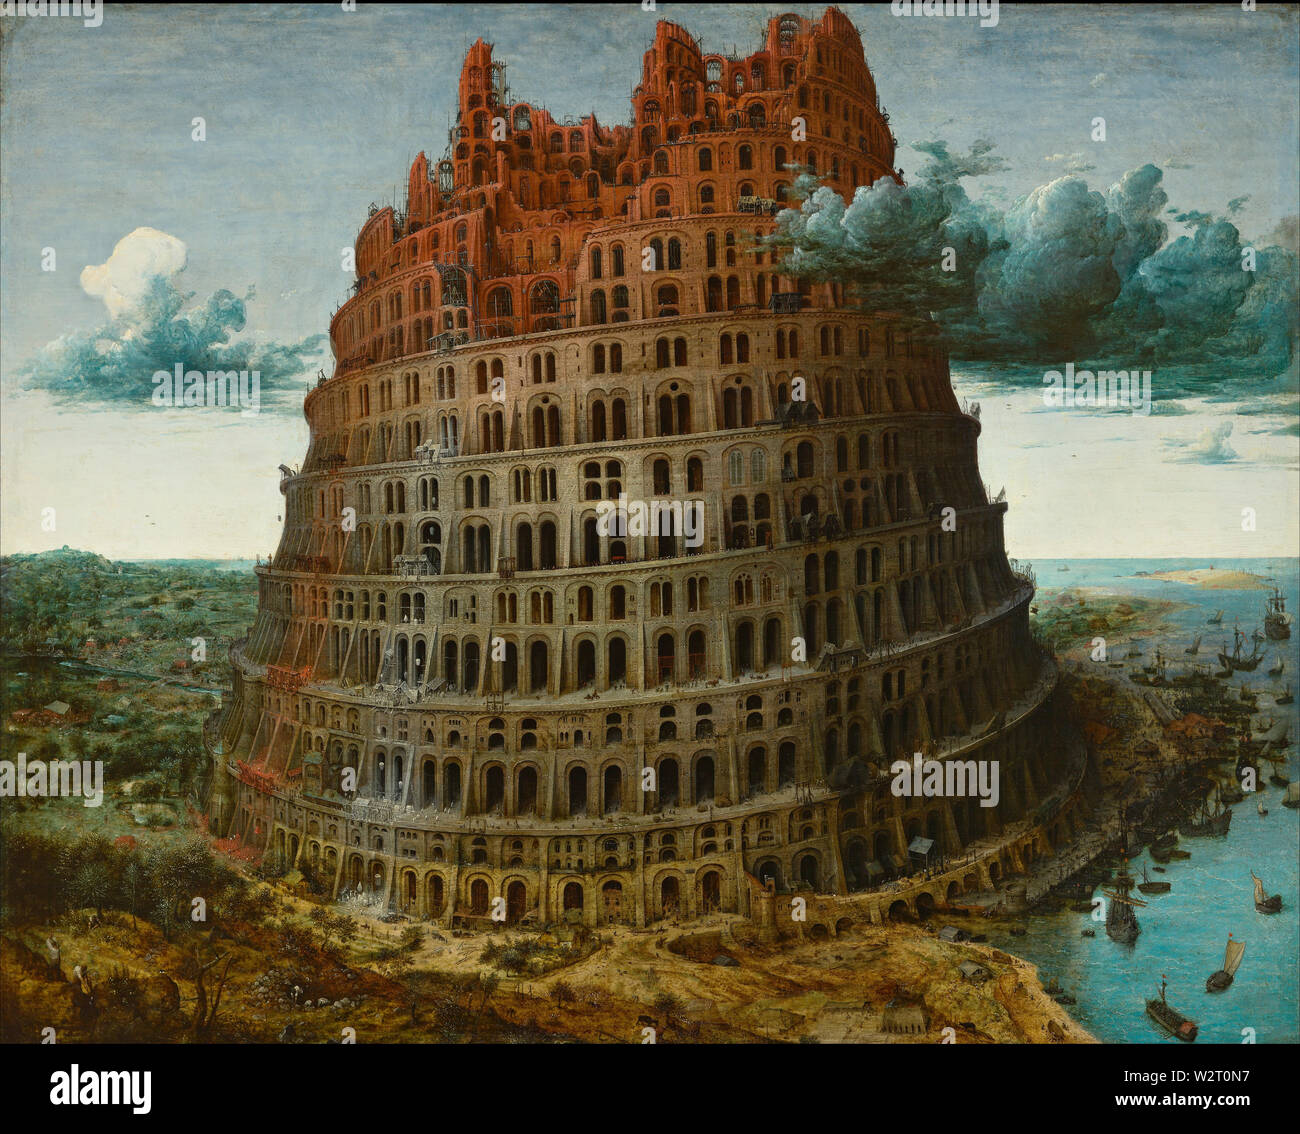 Der Turm von Babel (Rotterdam, Der kleine Turm von Babel ca. 1563-1565) Gemälde von Pieter Bruegel (Brueghel) der Ältere (I) Sehr hohe Bildqualität Stockfoto